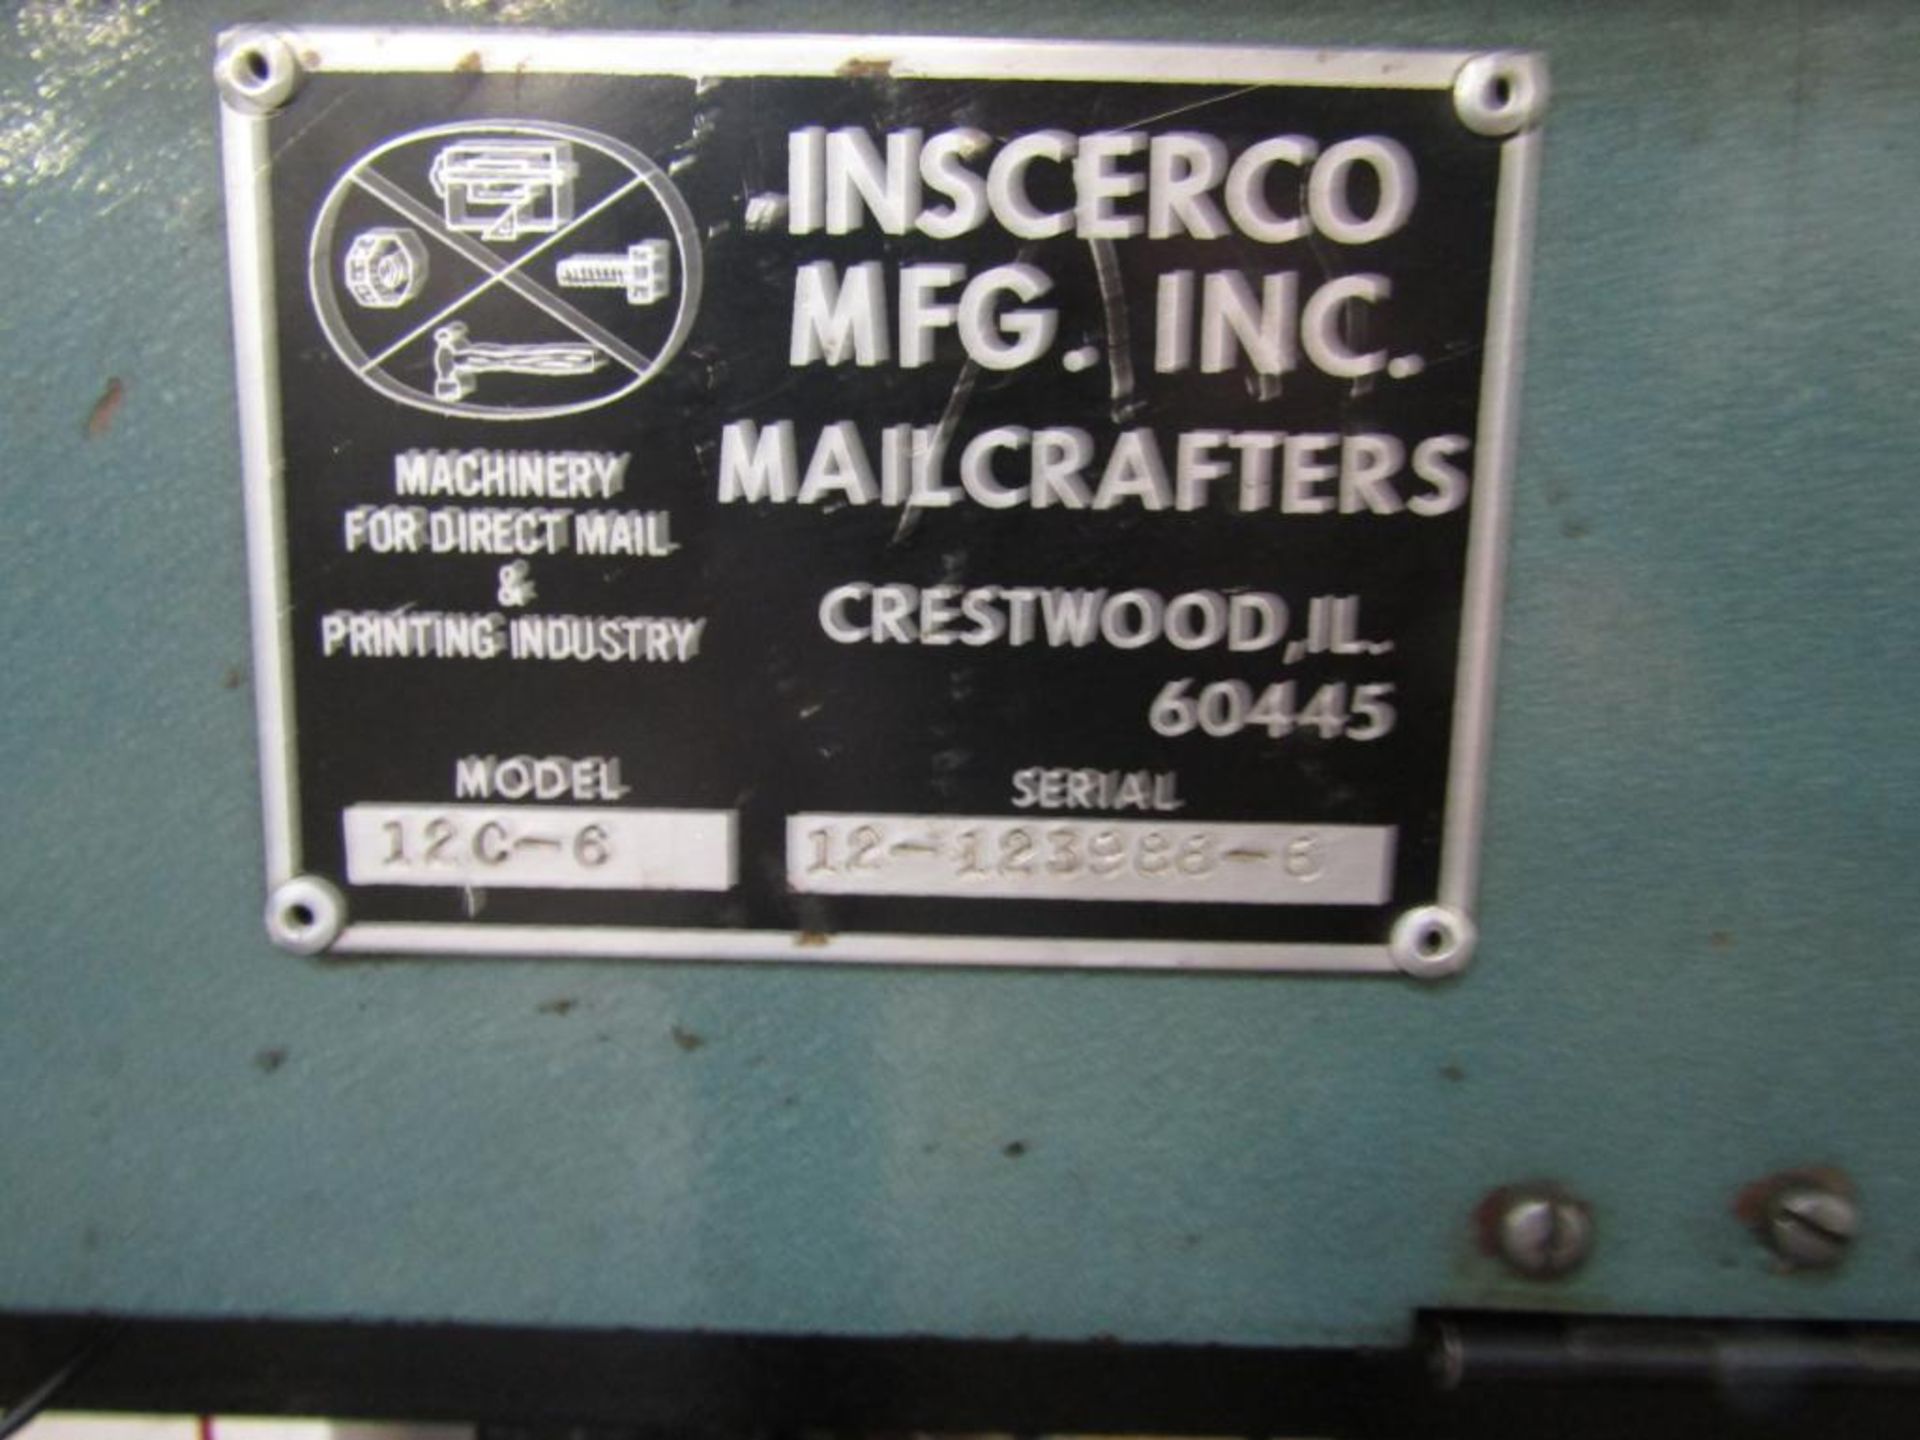 Inscerco 6 Station H.S. Envelope Inserter Model 12C-6, S/N12-123986-6 - Image 3 of 3